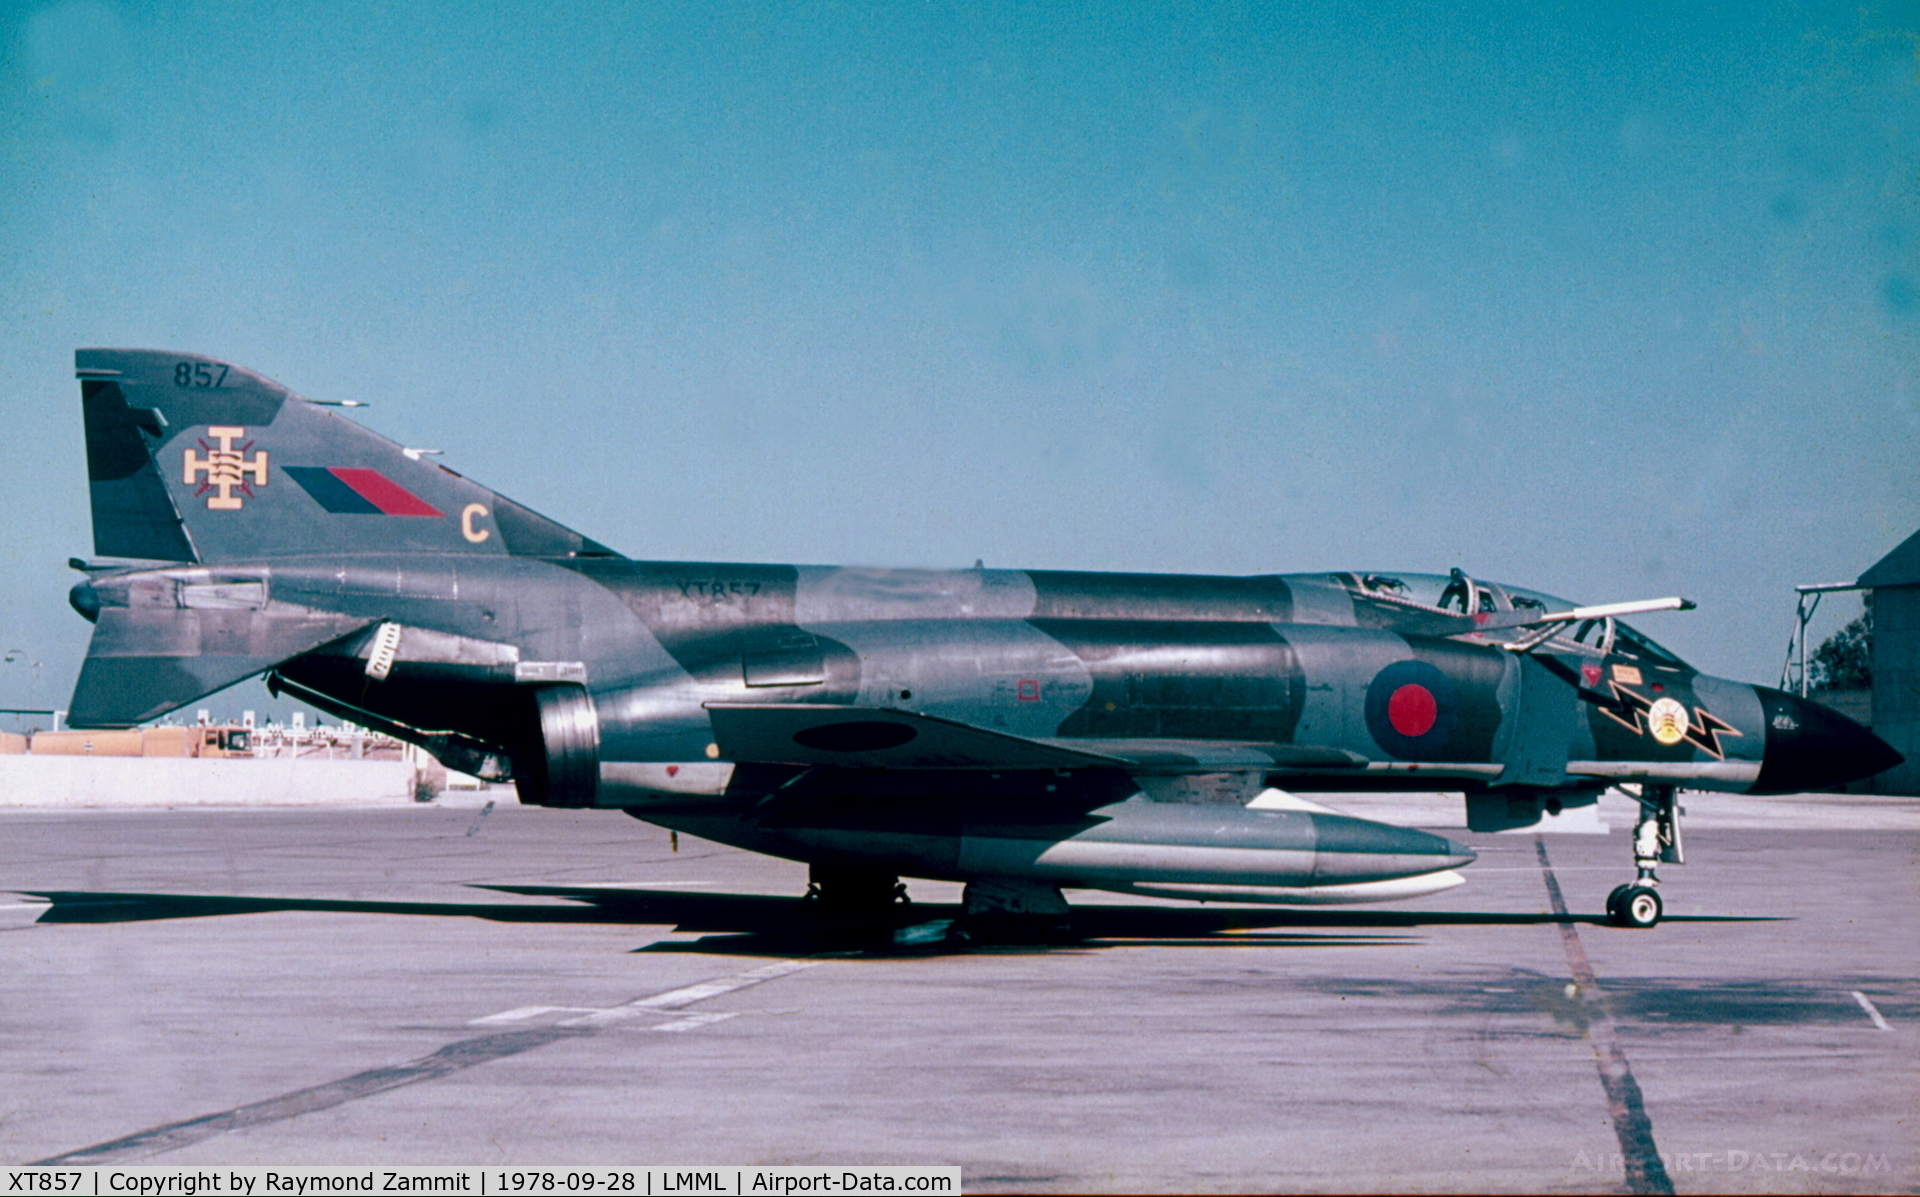 XT857, 1967 McDonnell Douglas Phantom FG1 C/N 2097, F4 Phantom FG1 XT857/C of 111Sqdn RAF